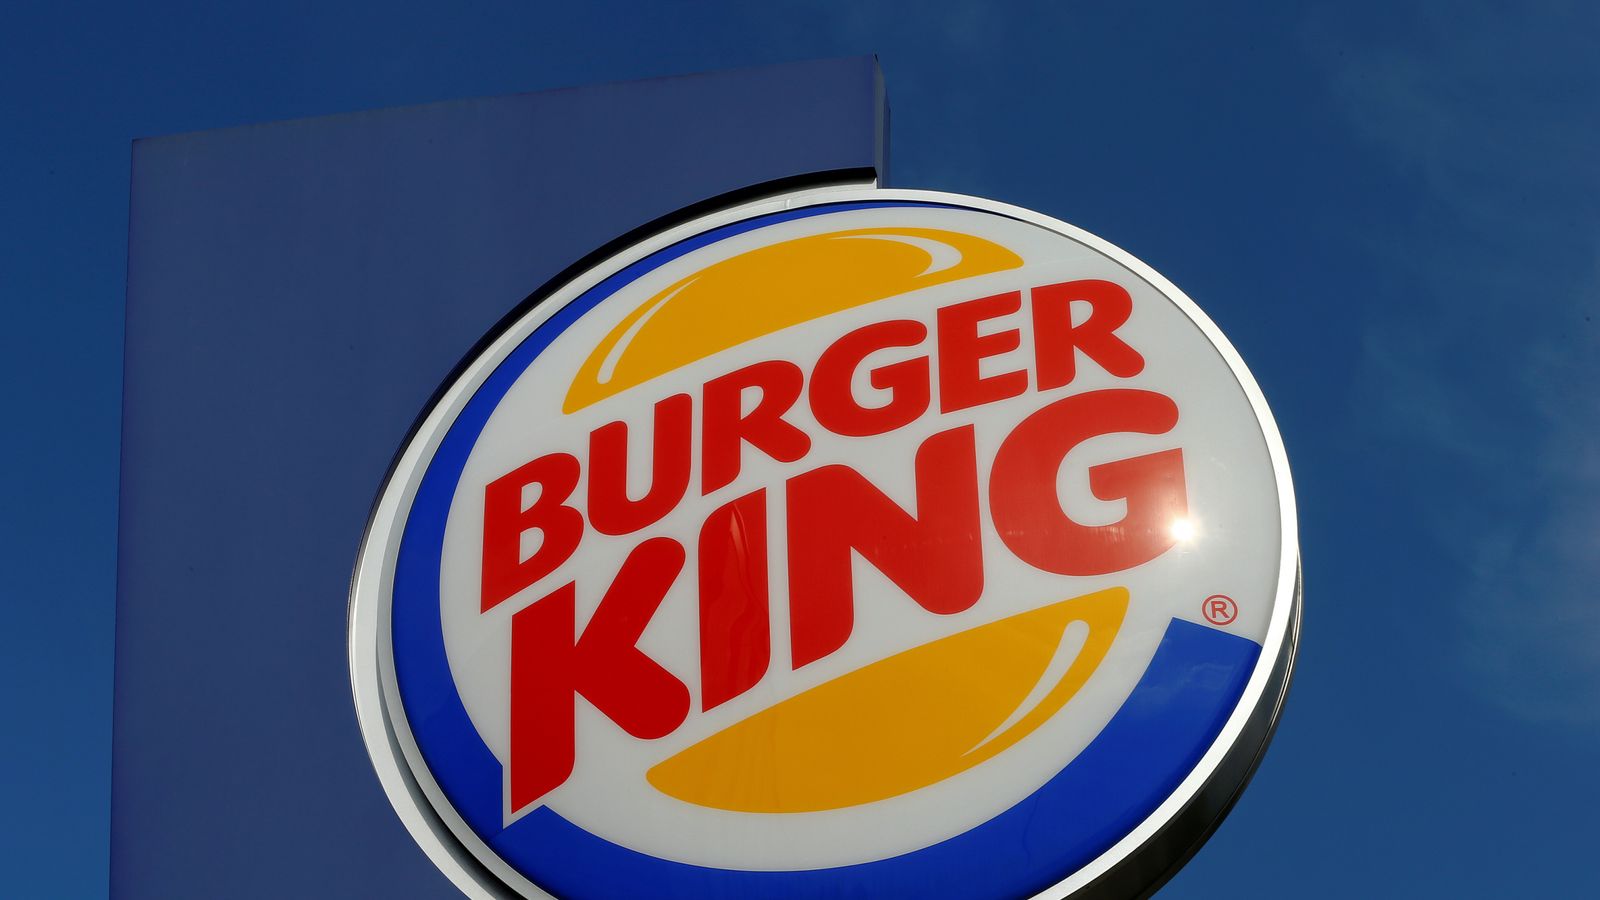 Delicious Vegan Options at Burger King